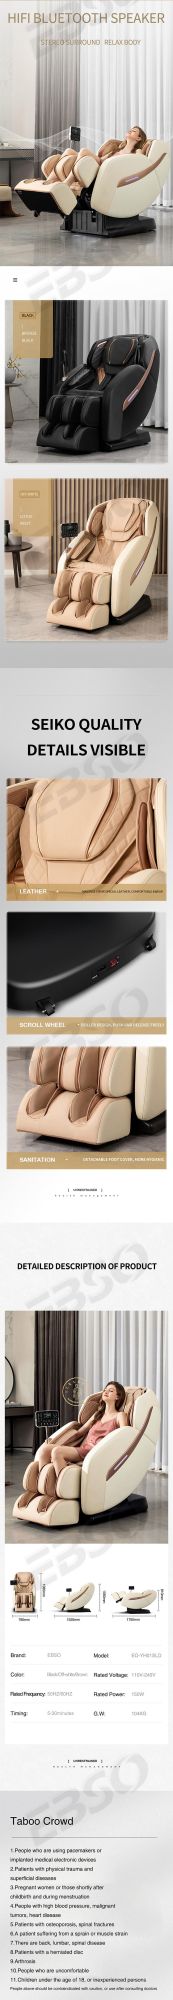 2021 Popular Massage Chair Best Luxury Massage Chair for Home Use 3D Calf Massager